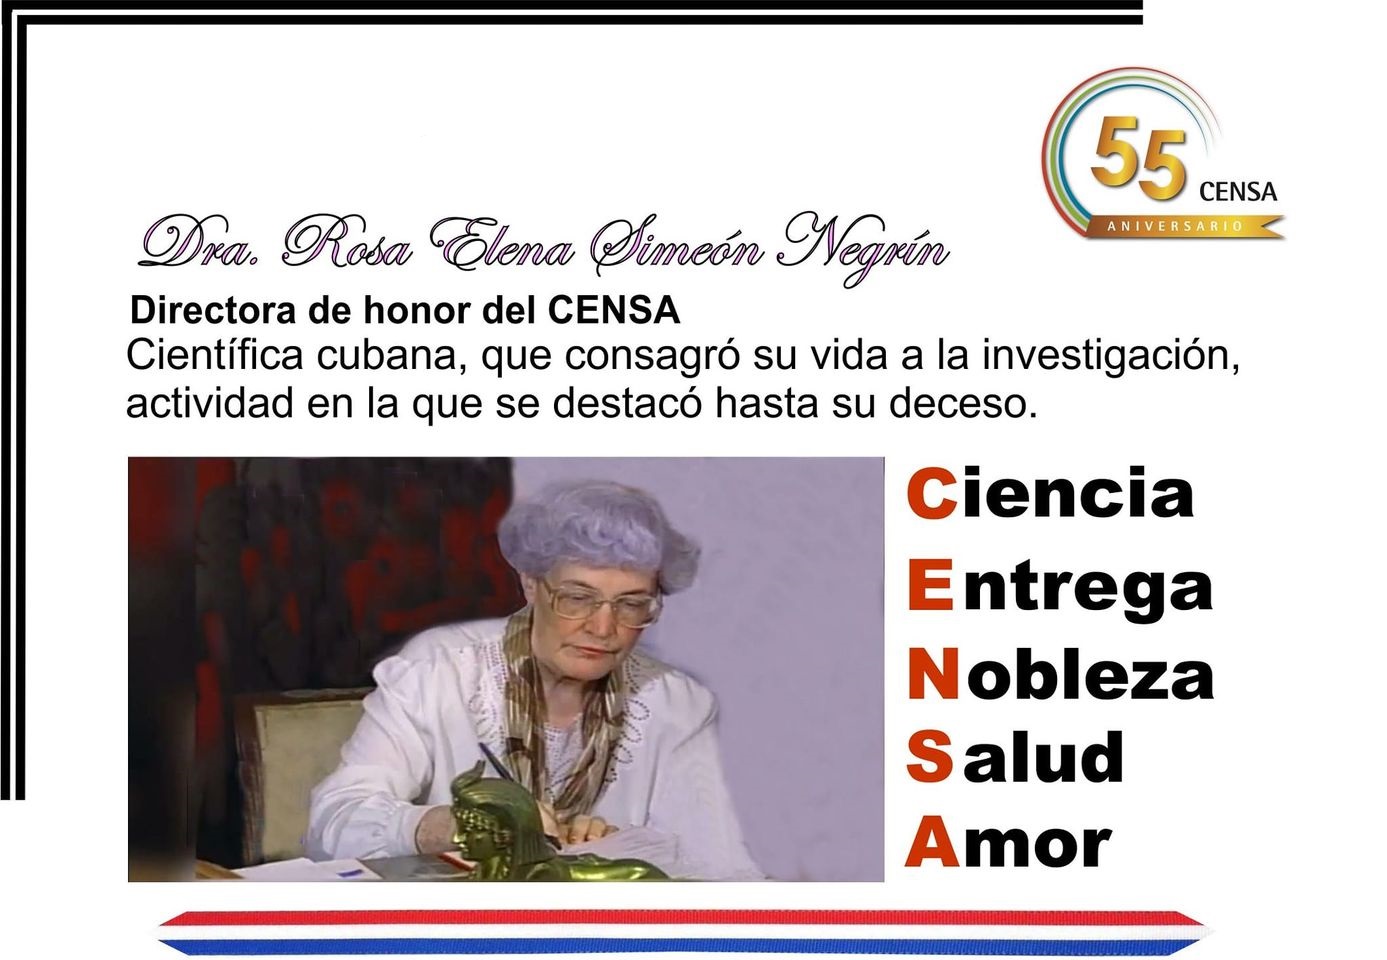 Rosa Elena Simeón Negrín, Viróloga de profesión